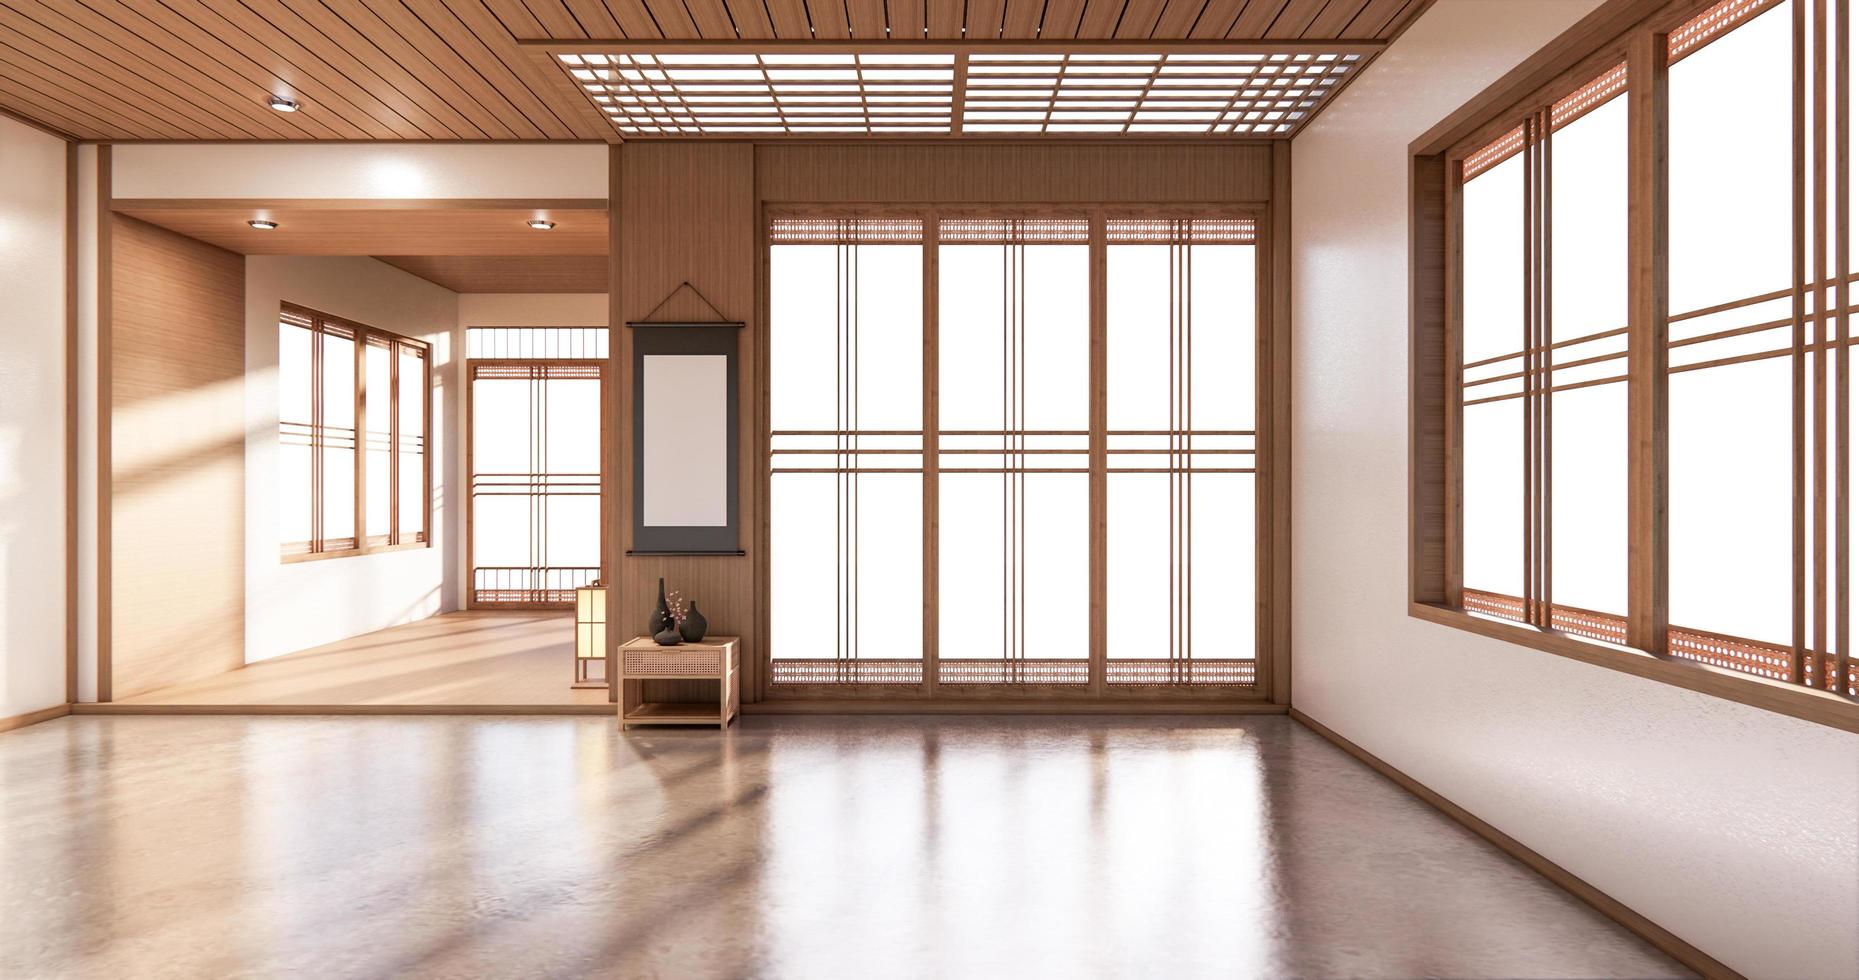 Latest Diseño De Estanteria Para Vivir En Habitacion Diseño Minimalista De Estilo Japones. Representación 3d foto